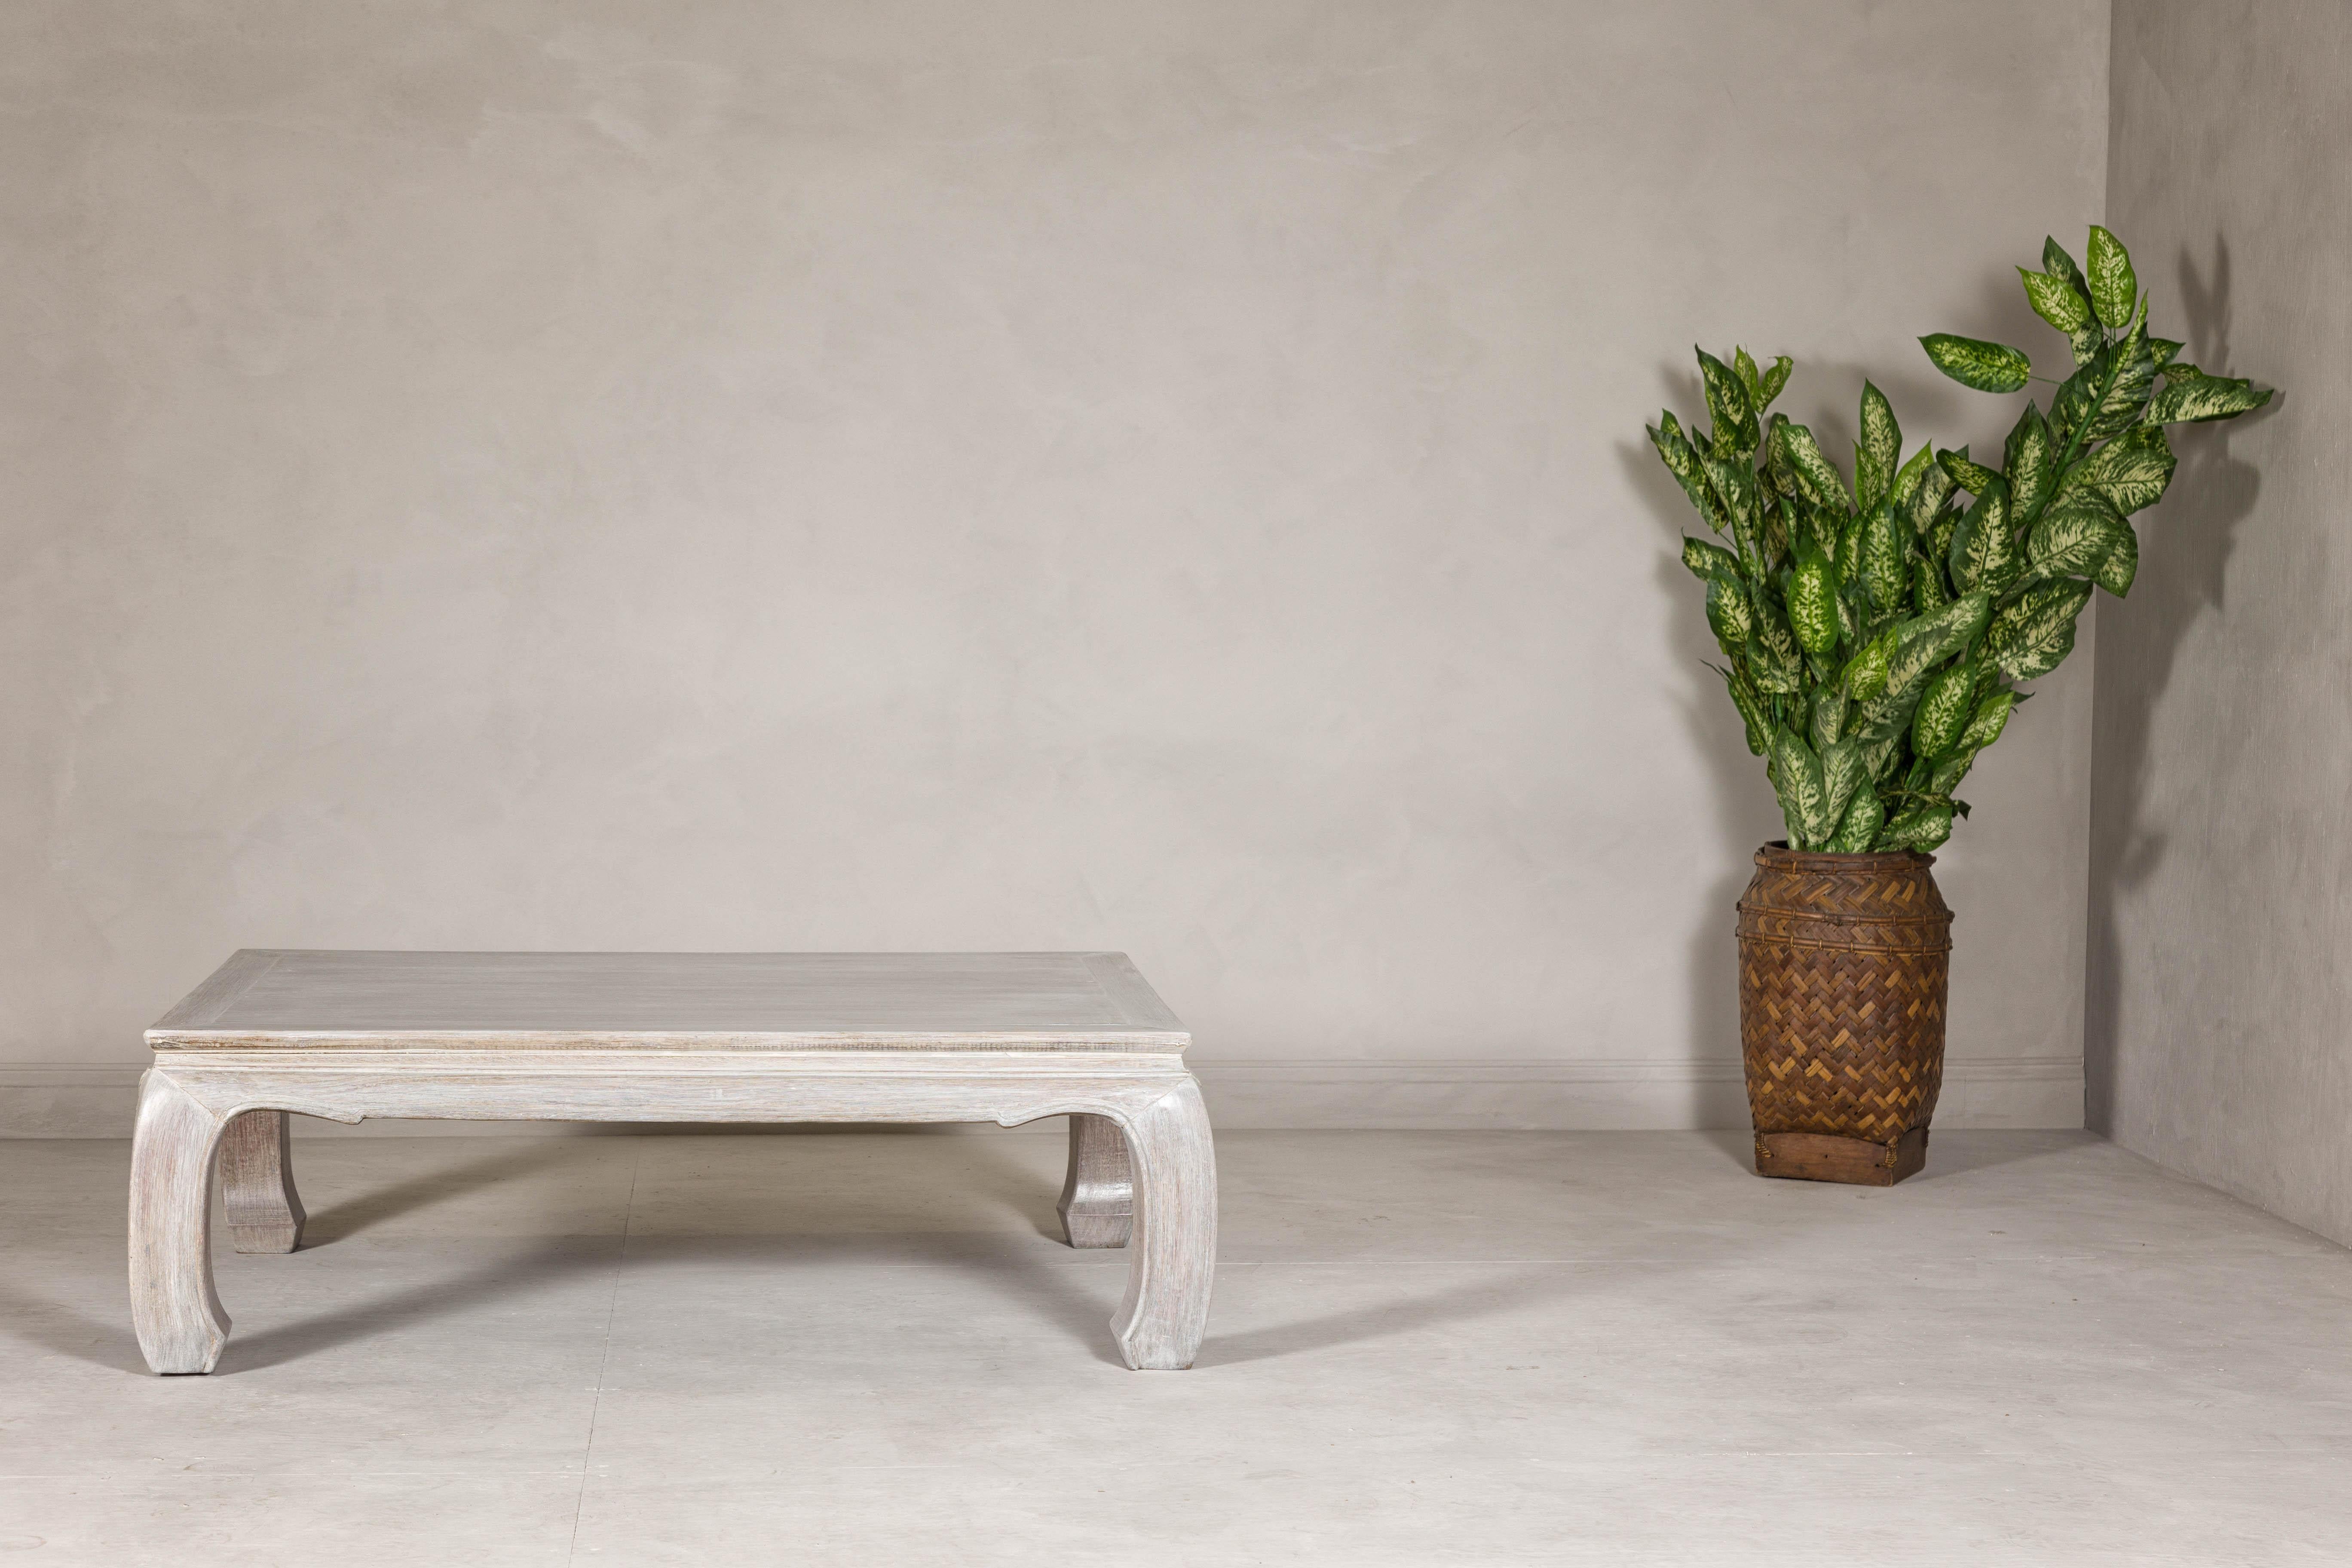 Table basse en bois de teck de style Ming, datant du 20e siècle, avec des pieds en chow et une patine d'usage. Cette table basse vintage en bois de teck, stylisée dans la tradition Ming et finie à la chaux, insuffle une élégance sereine et